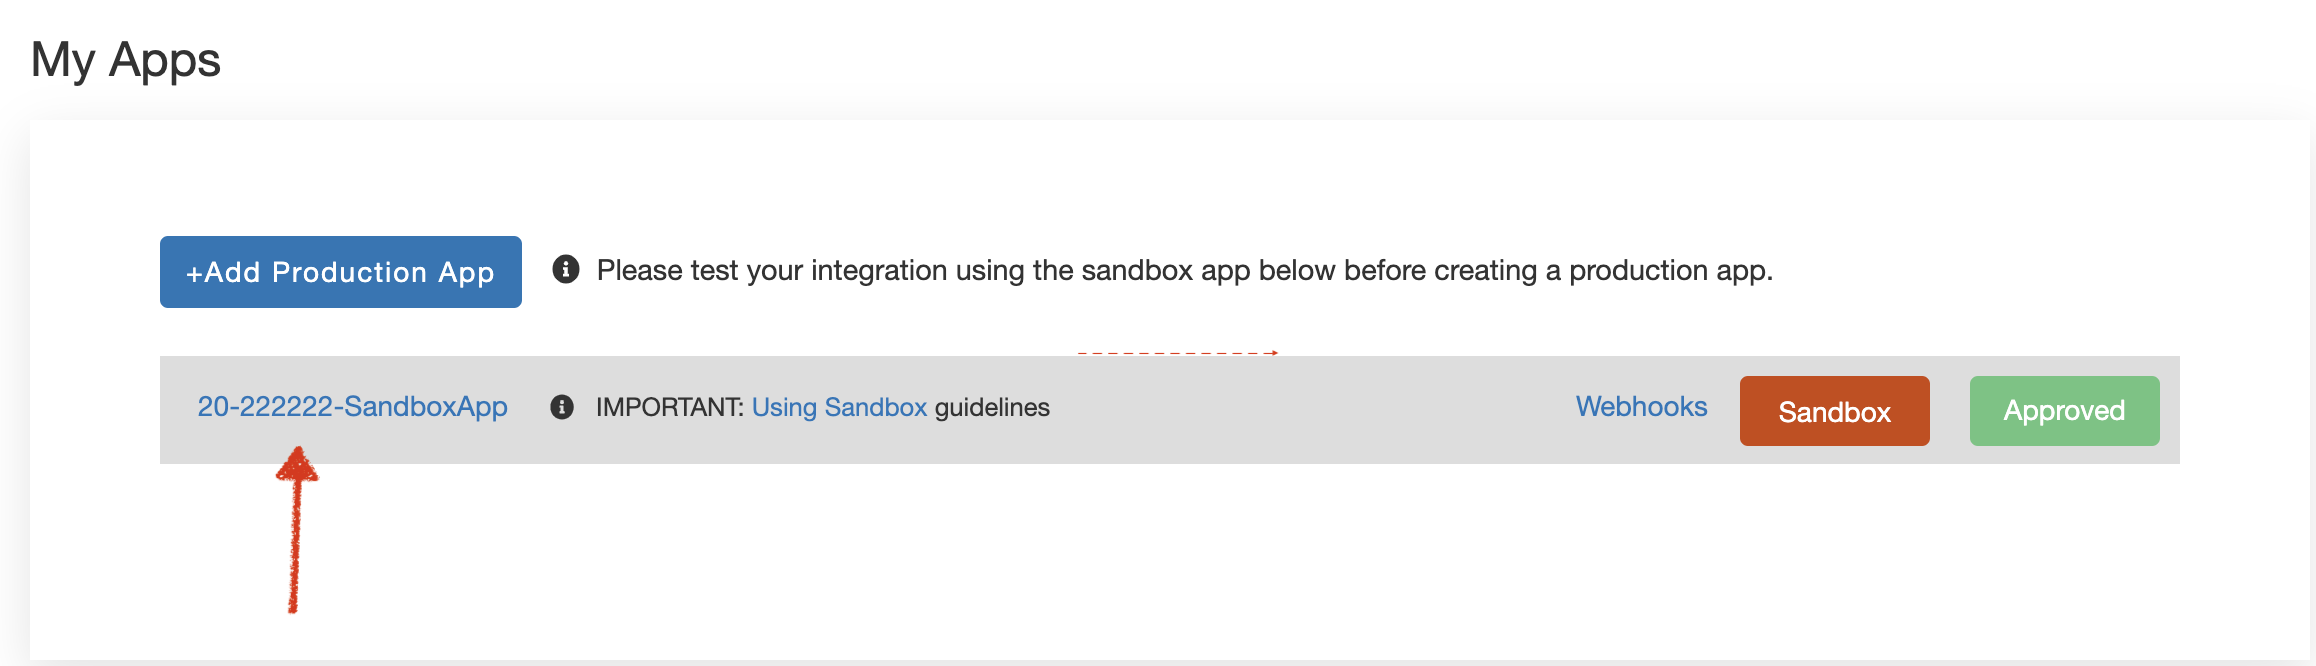 Sandbox App